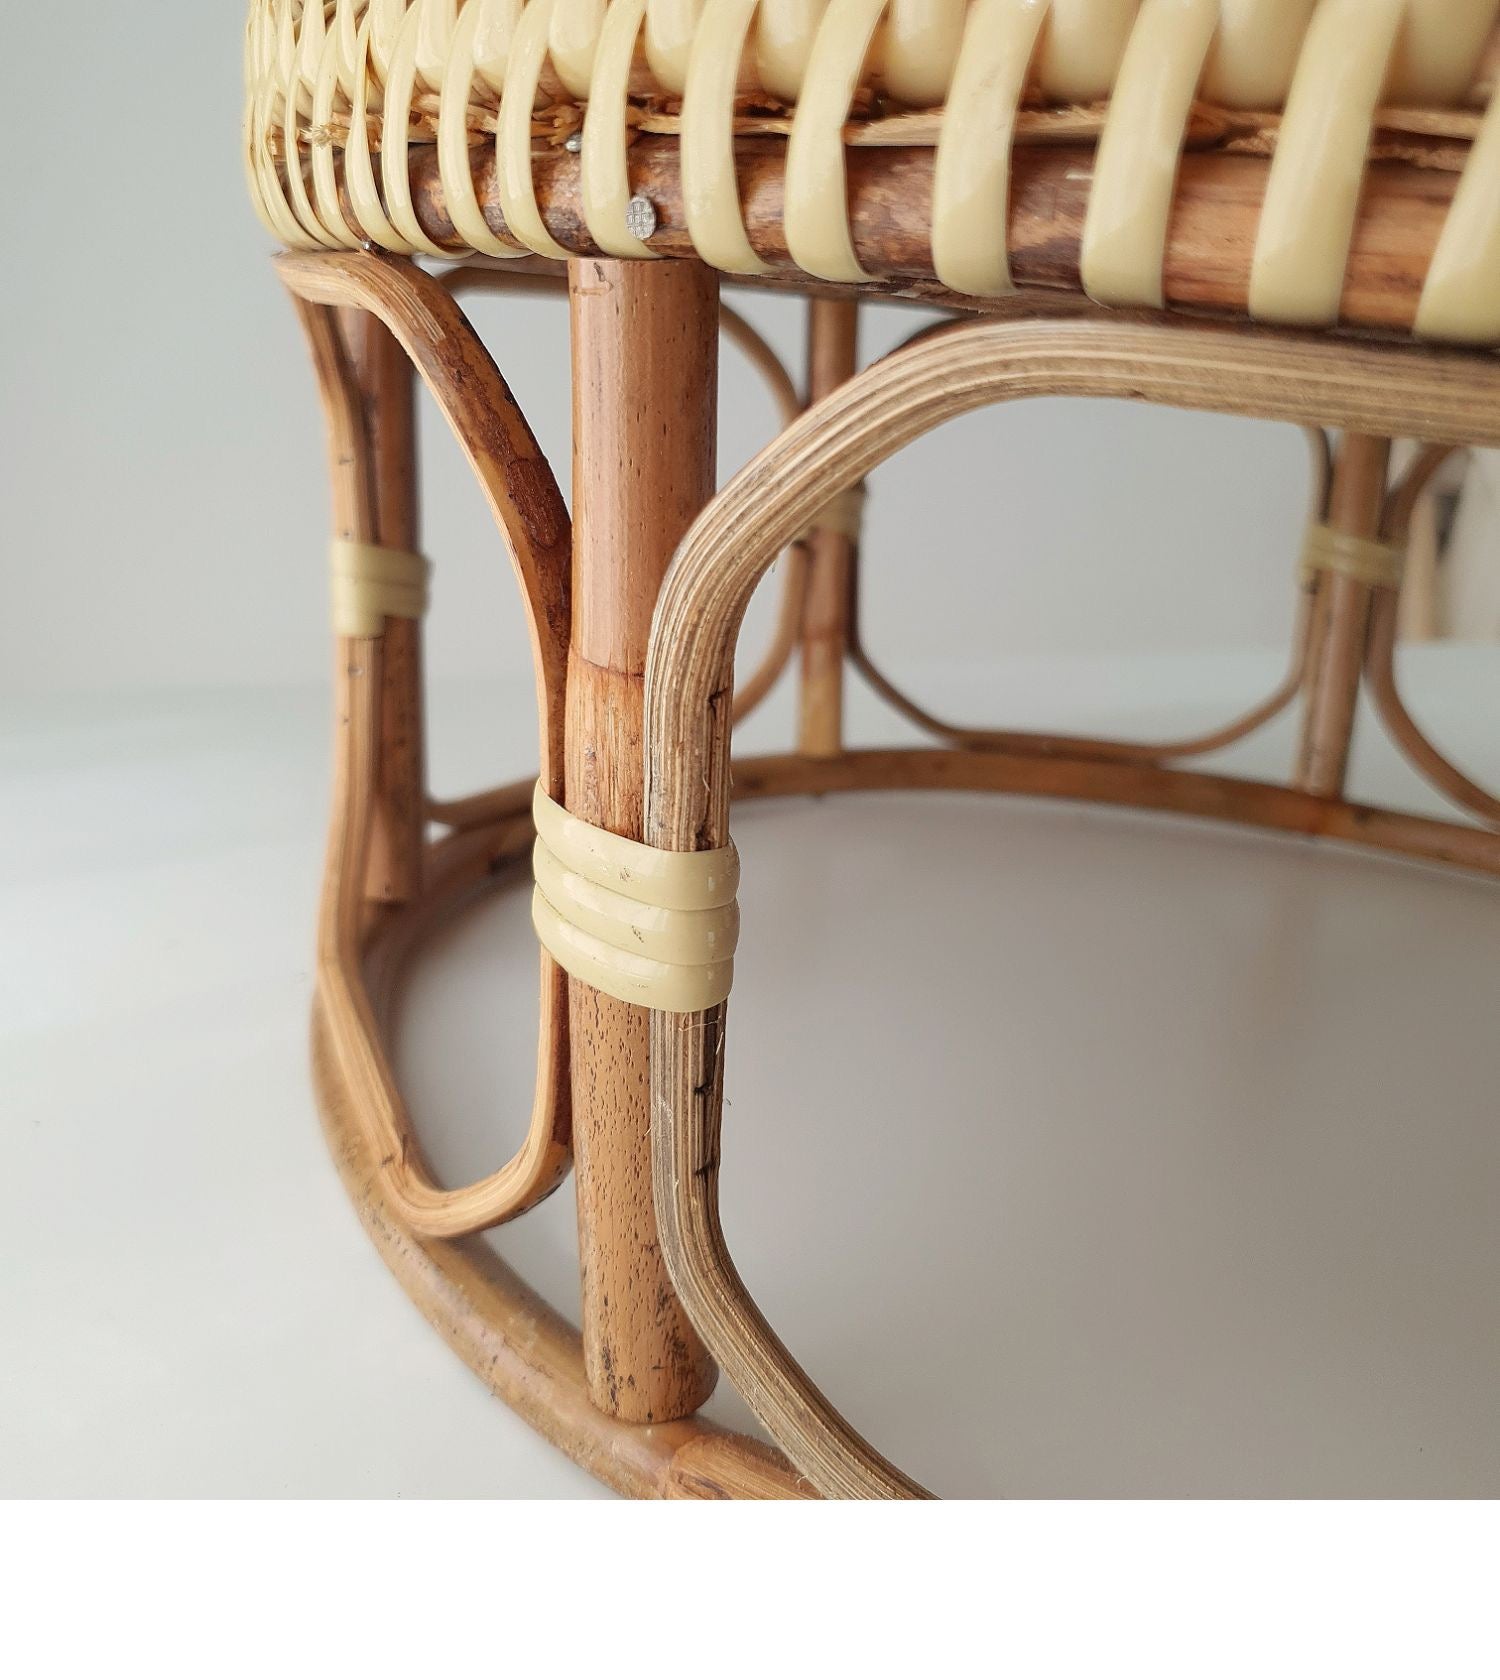 ハンドメイド竹編み テーブル竹製品 収納 竹編み  オシャレ ラタンインテリアフルーツトレイ